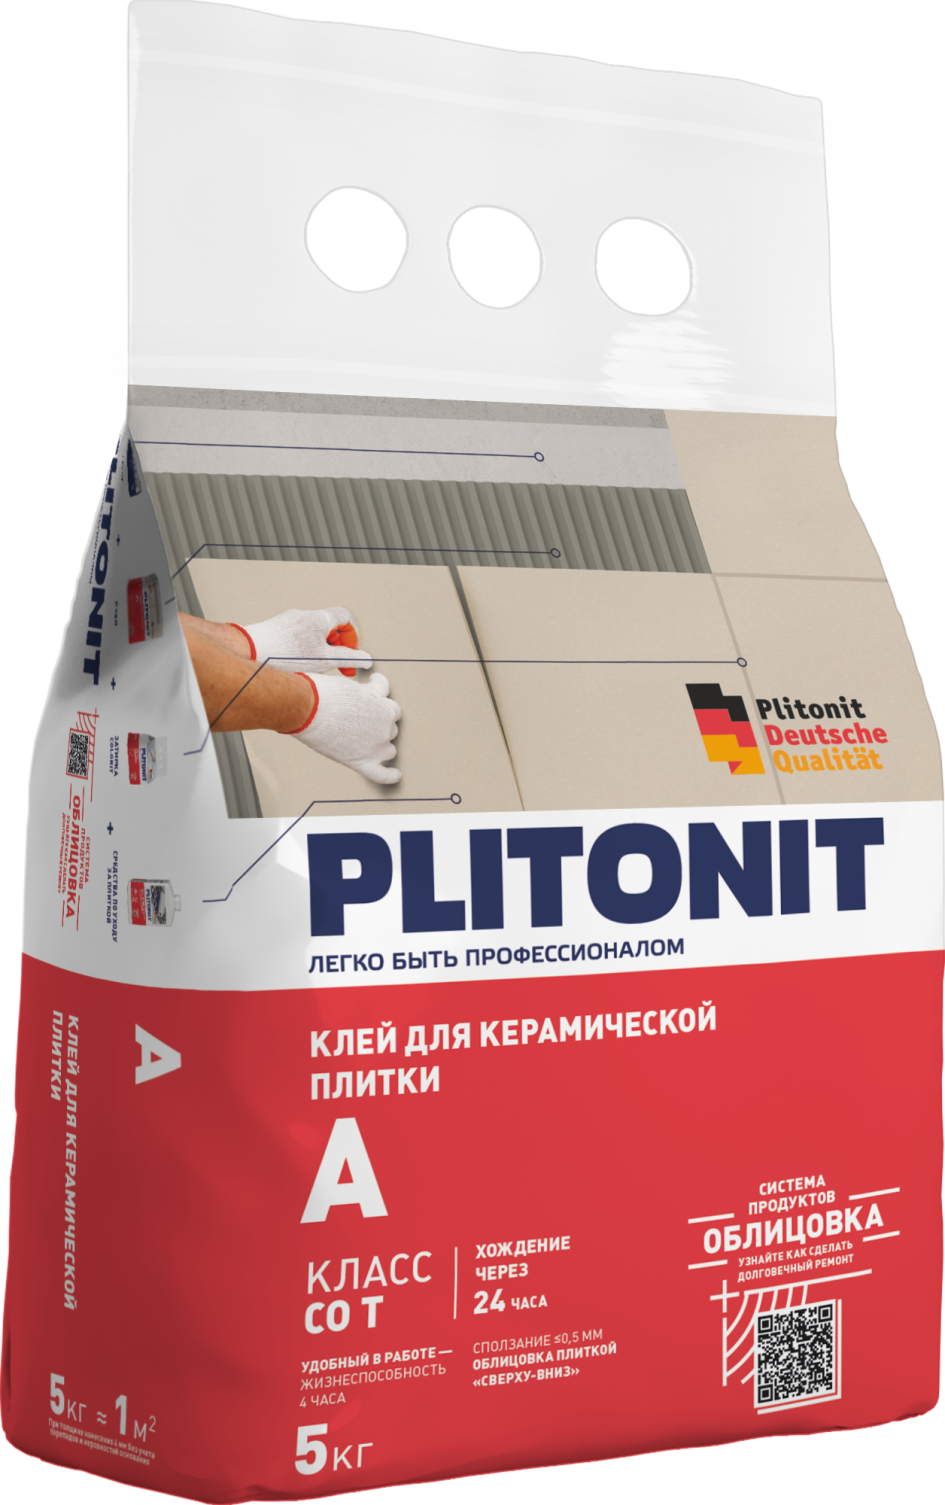 Клеи серии «Плитонит» (Plitonit): инструкция по применению и свойства для разных видов плитки